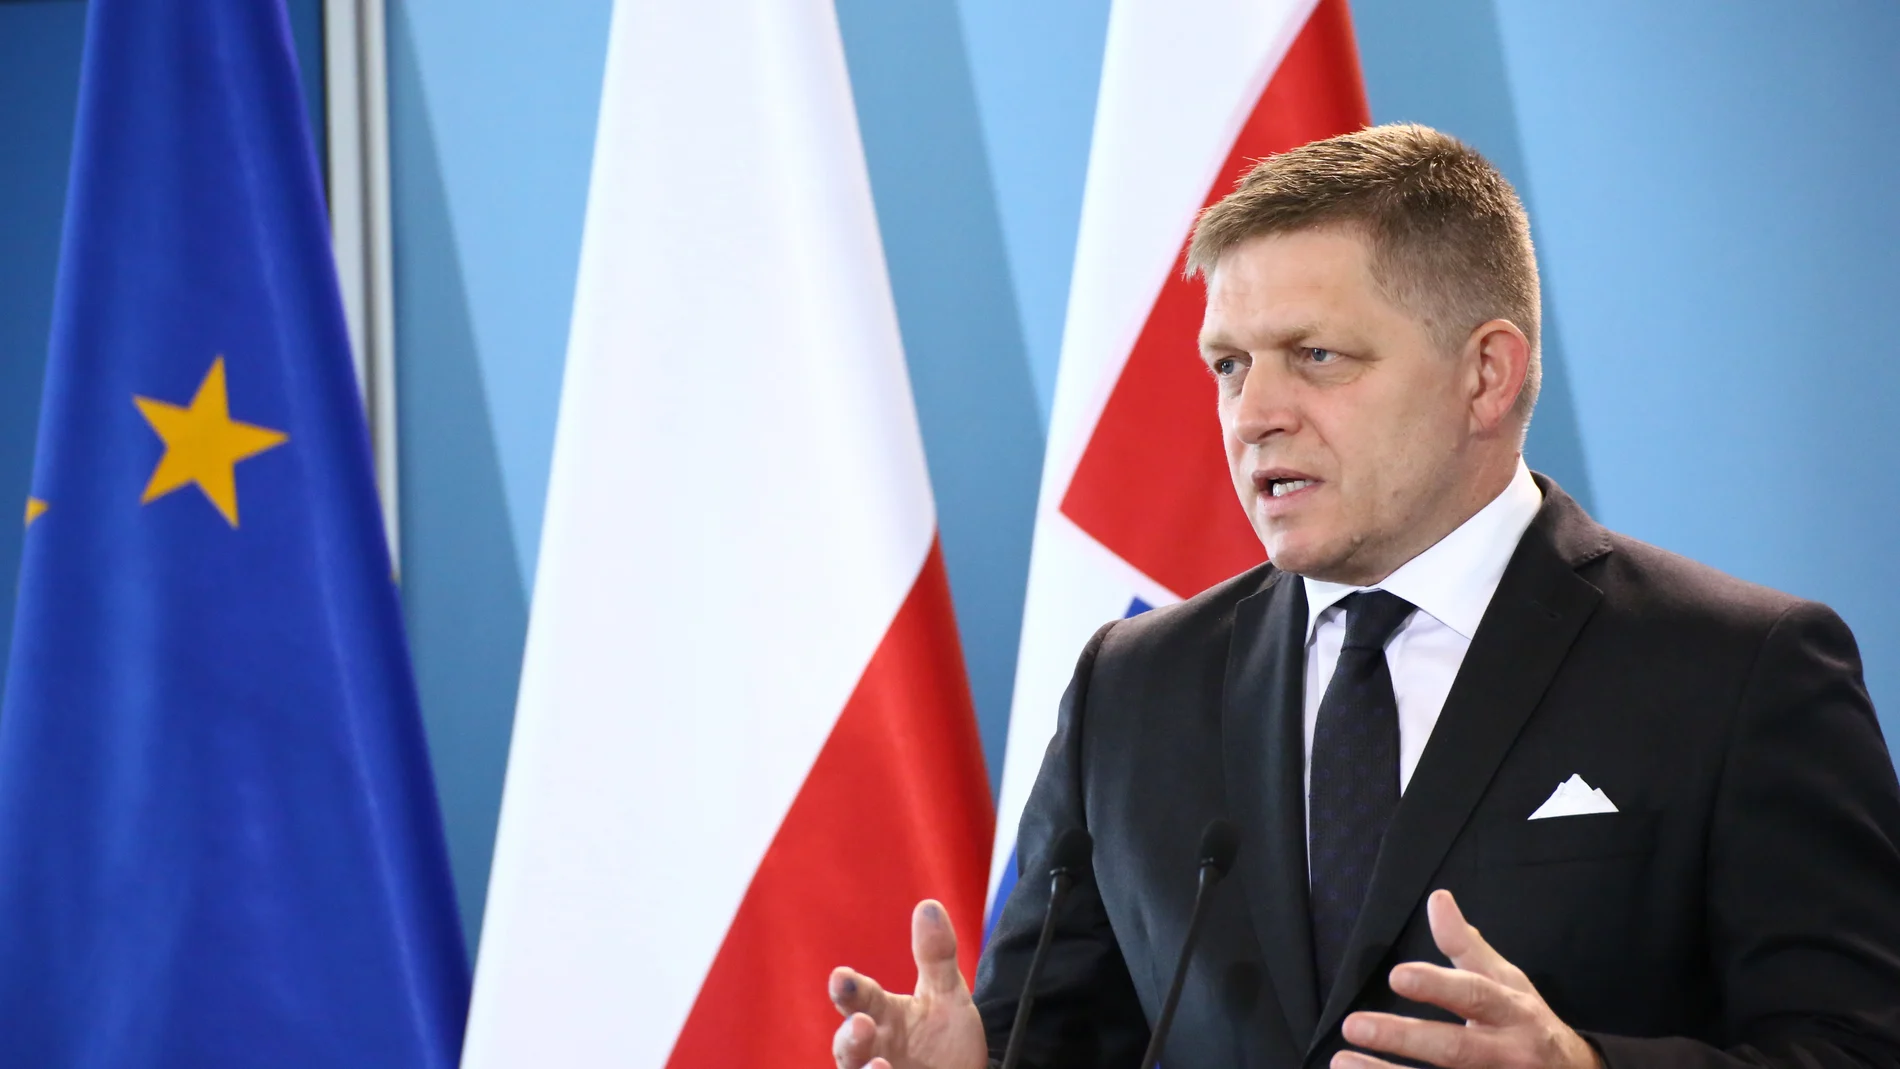 Eslovaquia.- Robert Fico asume este miércoles como primer ministro eslovaco entre recelos por sus posturas prorrusas